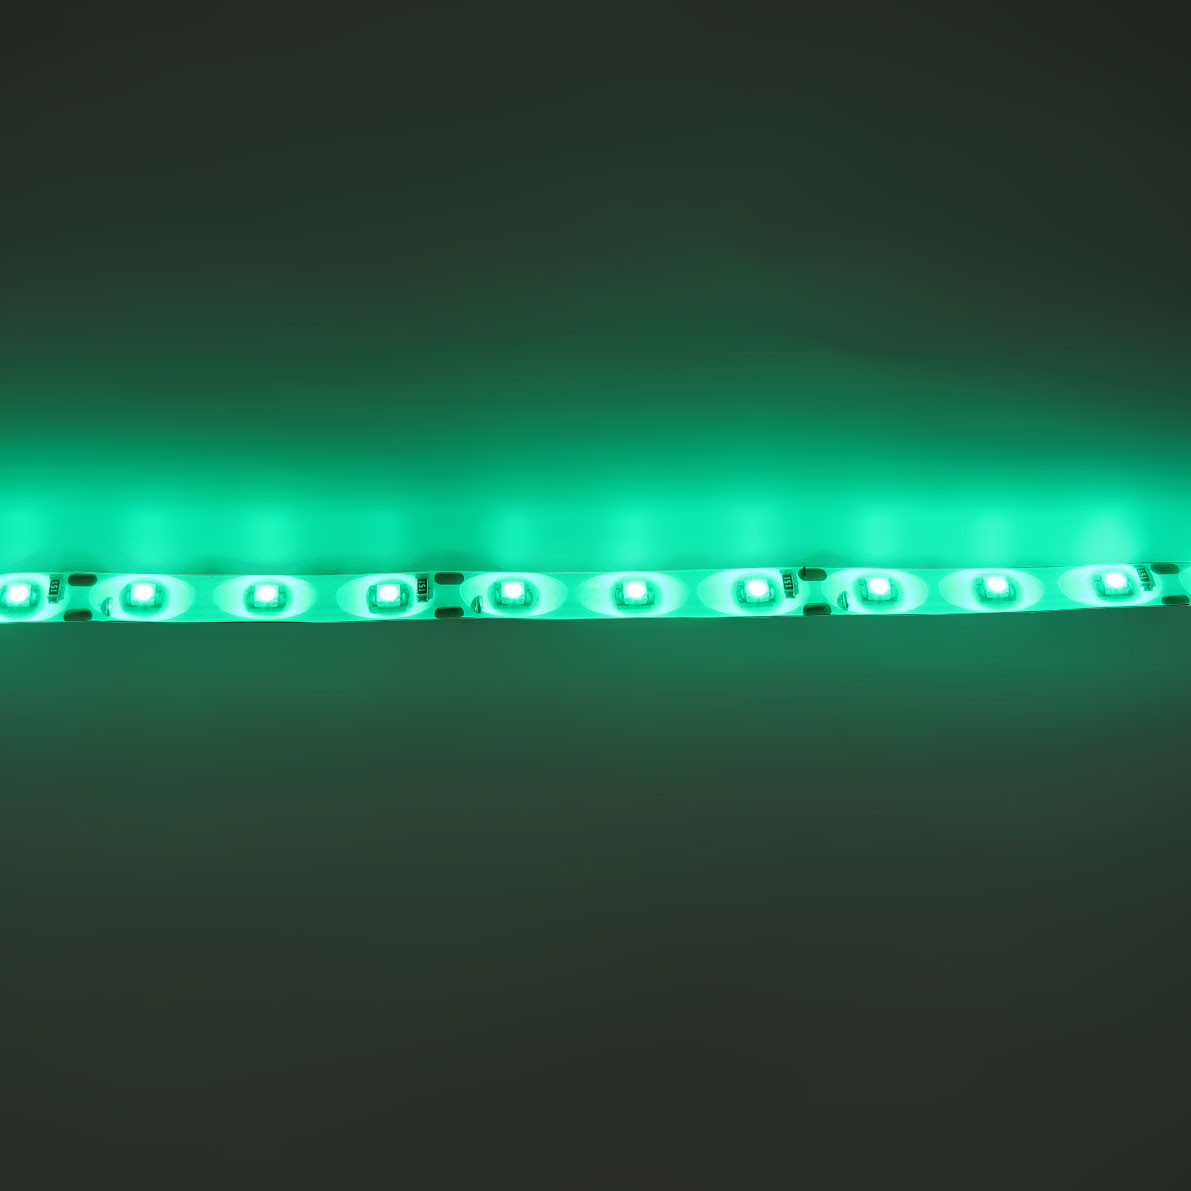 светодиодная лента standart class, 3528, 60led/m, green, 12v, ip65, артикул 52708